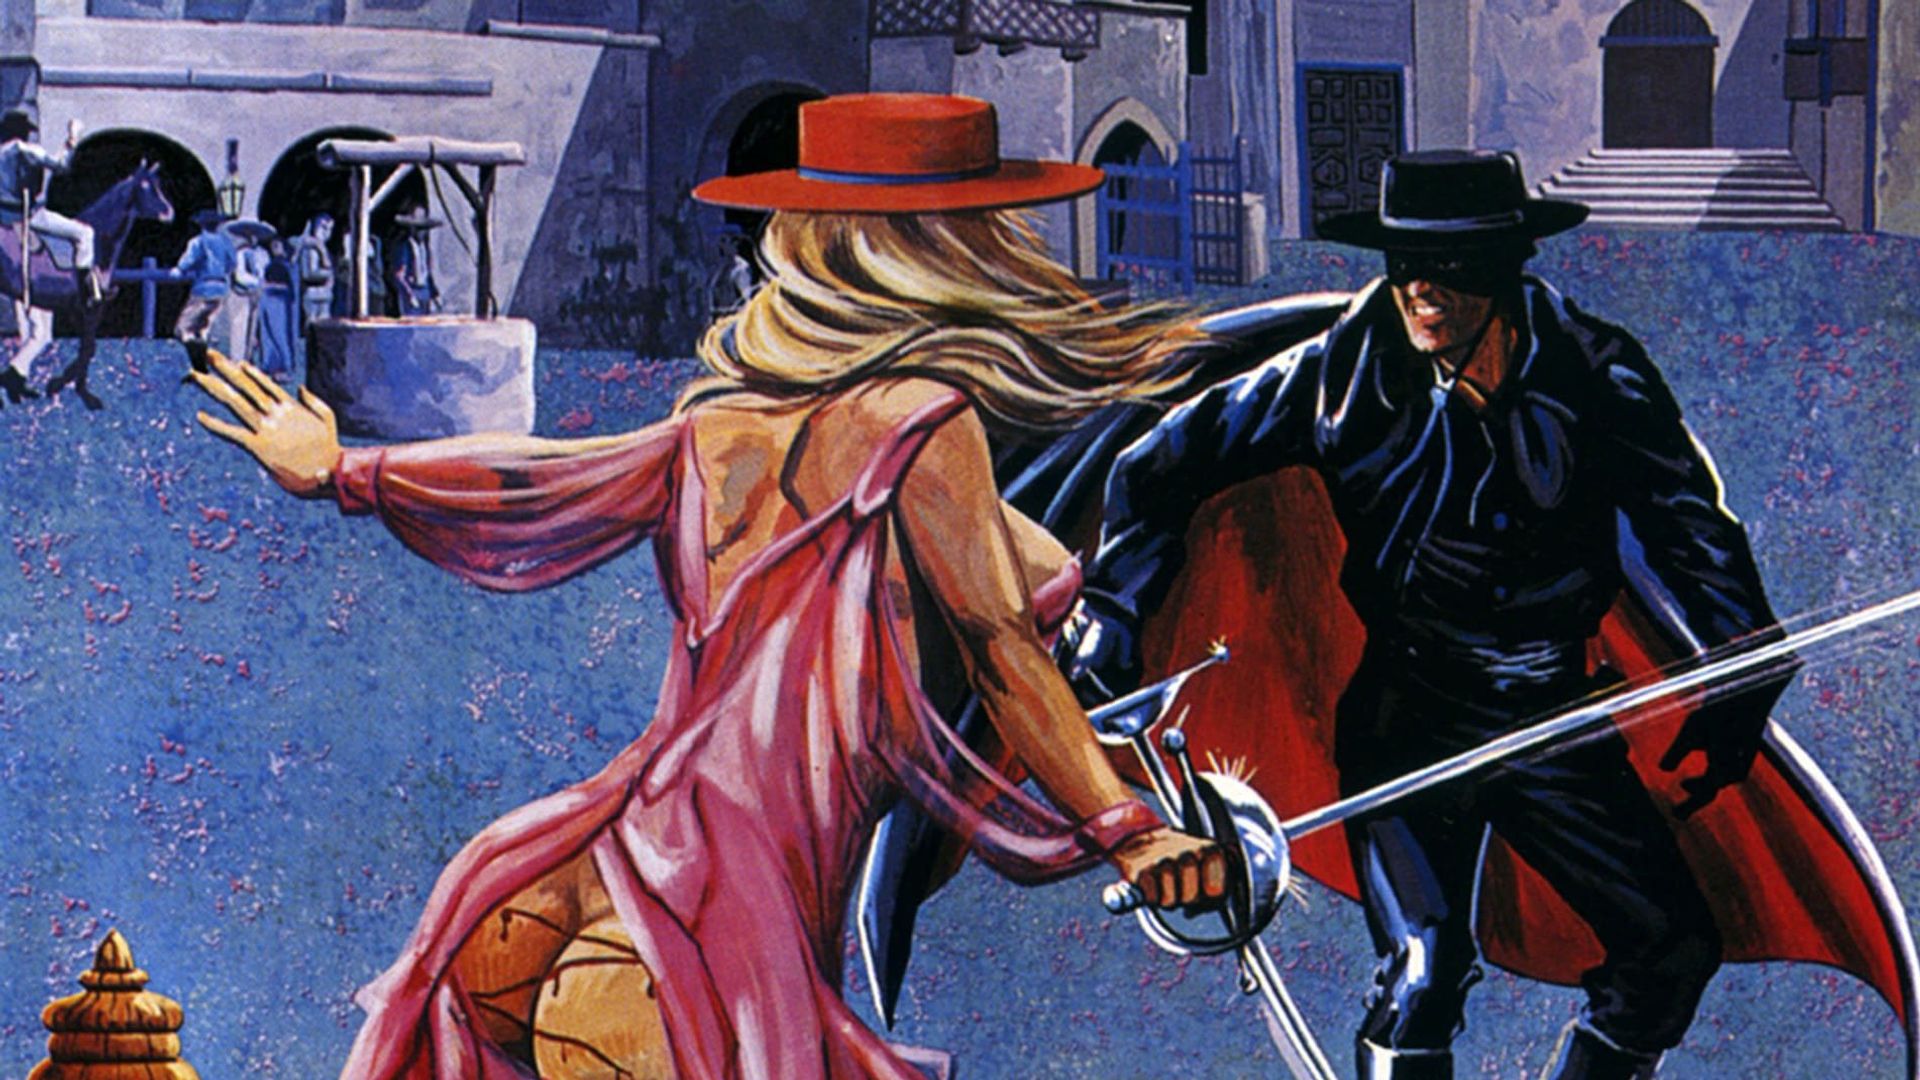 The Erotic Adventures of Zorro background